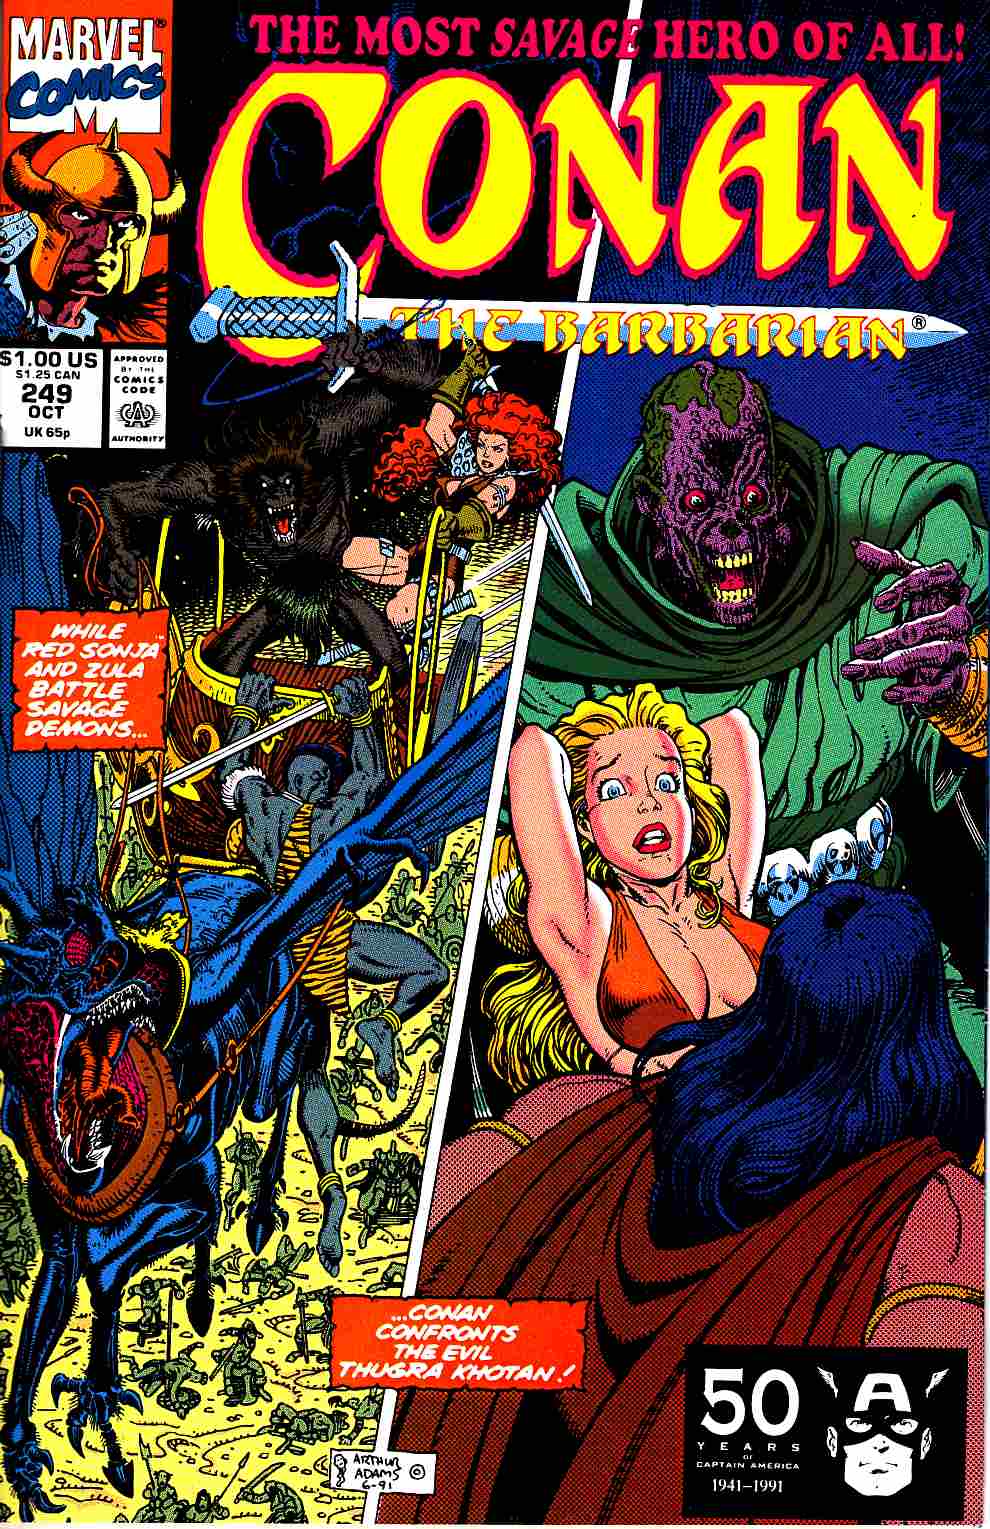 アメコミ MARVEL DC COMICS 戦争 西部劇 コナン系 24冊セット